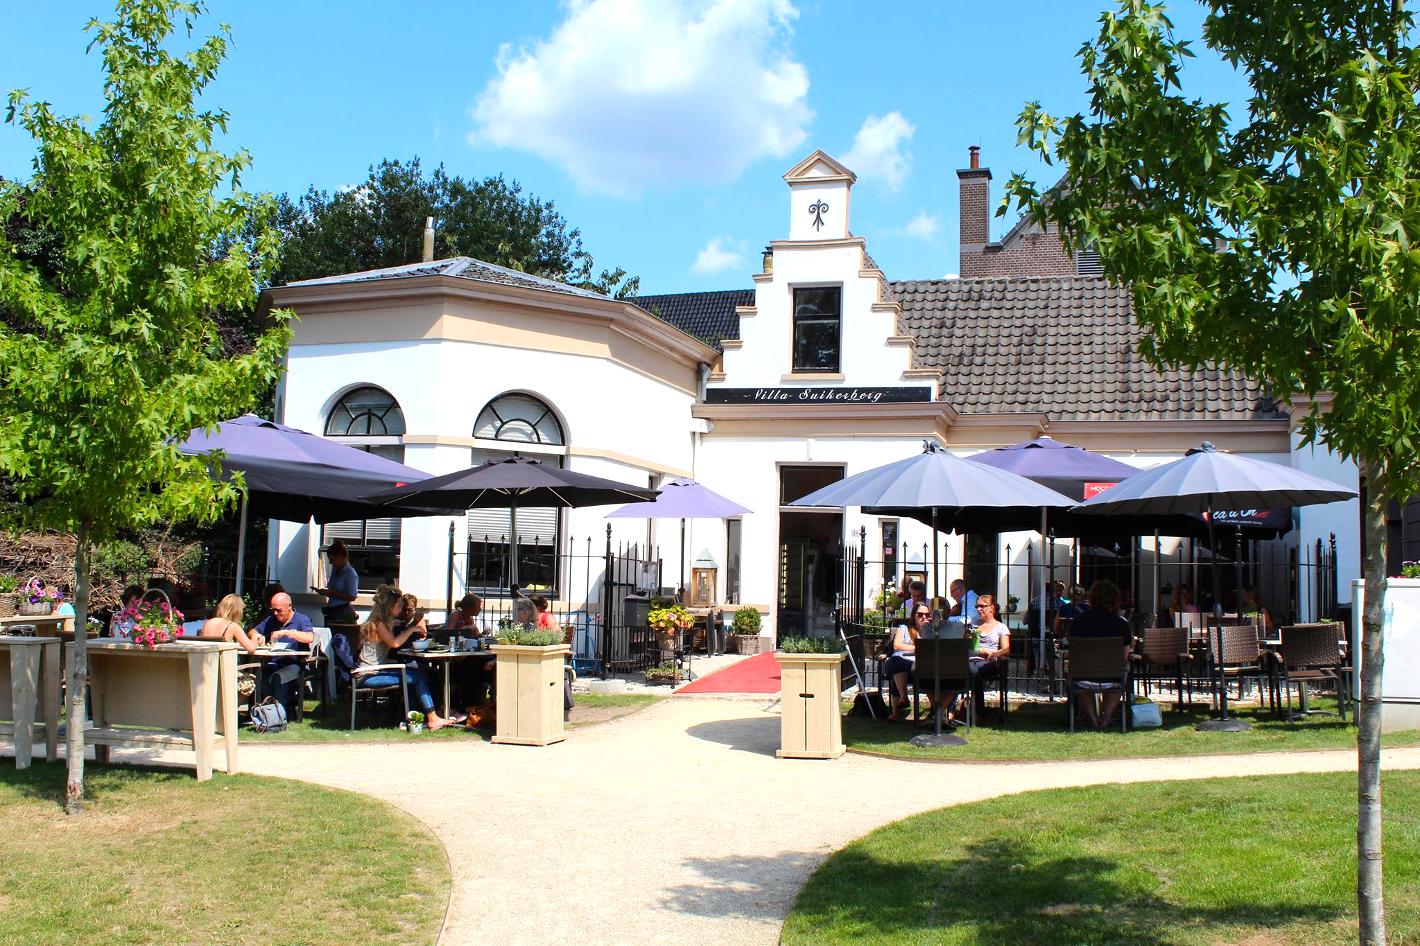 Foto Villa Suikerberg in Zwolle, Eten & drinken, Genieten van lunch, Gezellig borrelen - #1